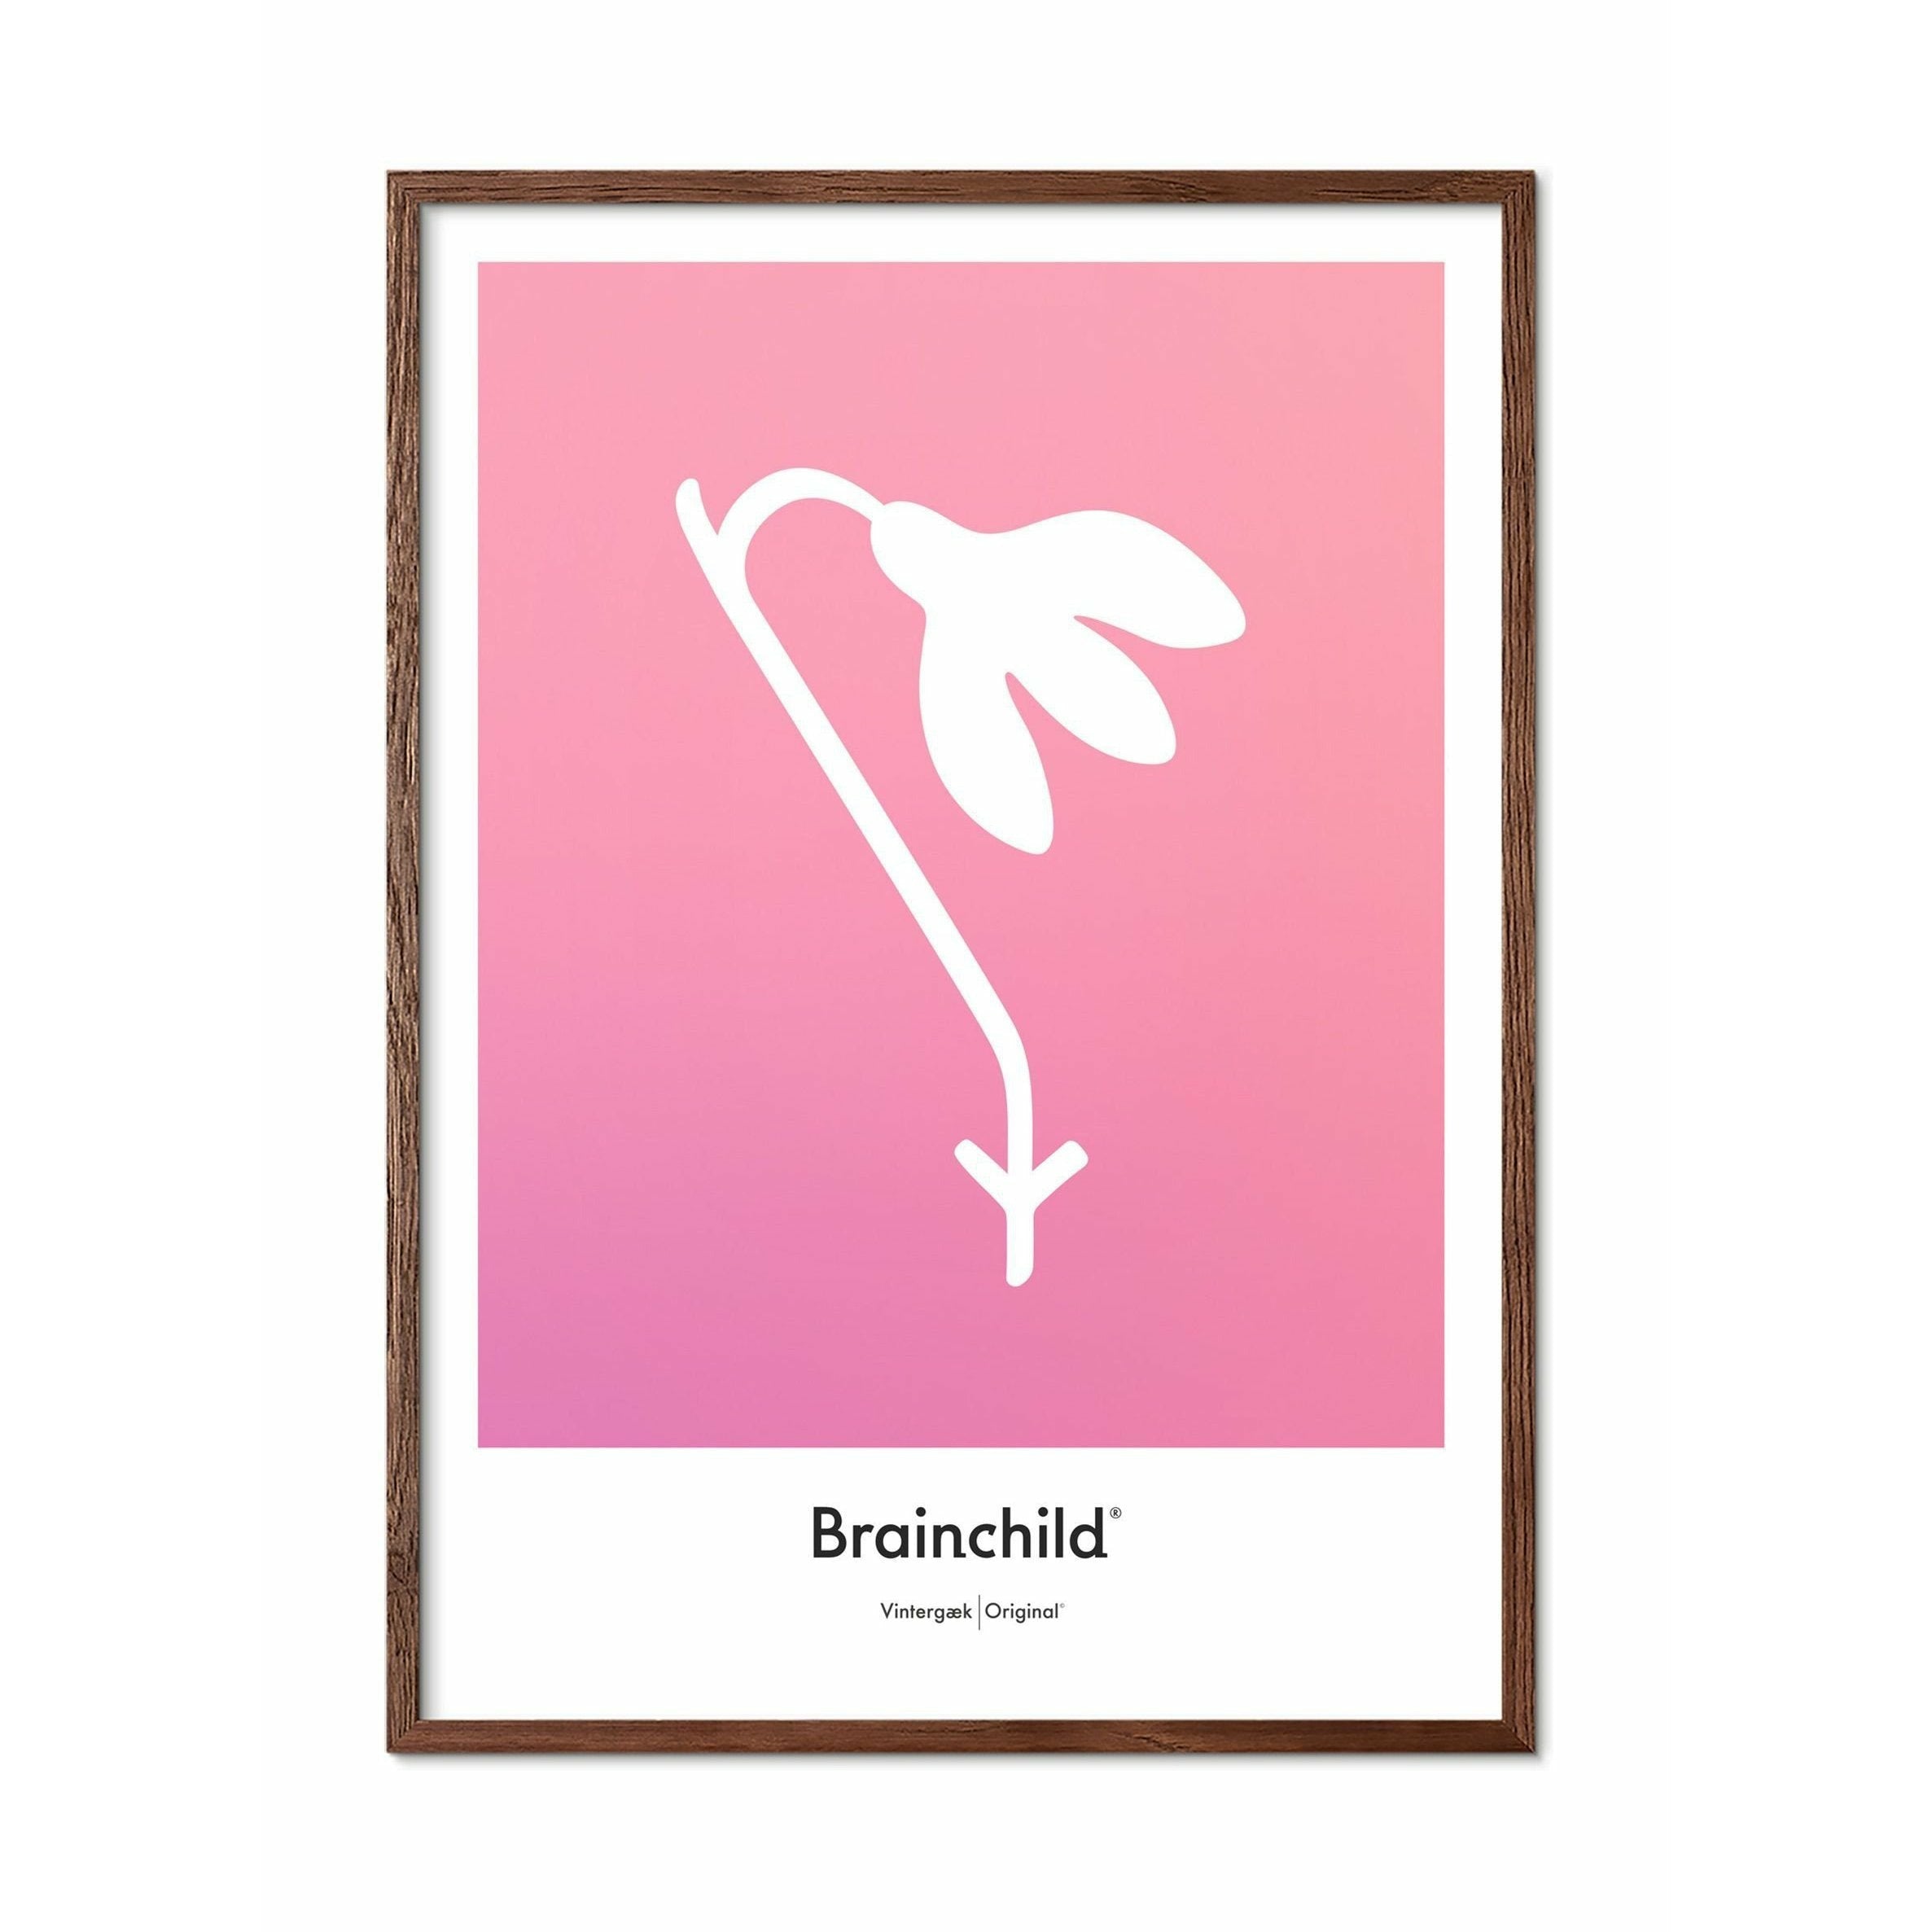 Brainchild Snowdrop Design Icon Poster, Frame Made Of Dark Wood 30x40 Cm, Pink